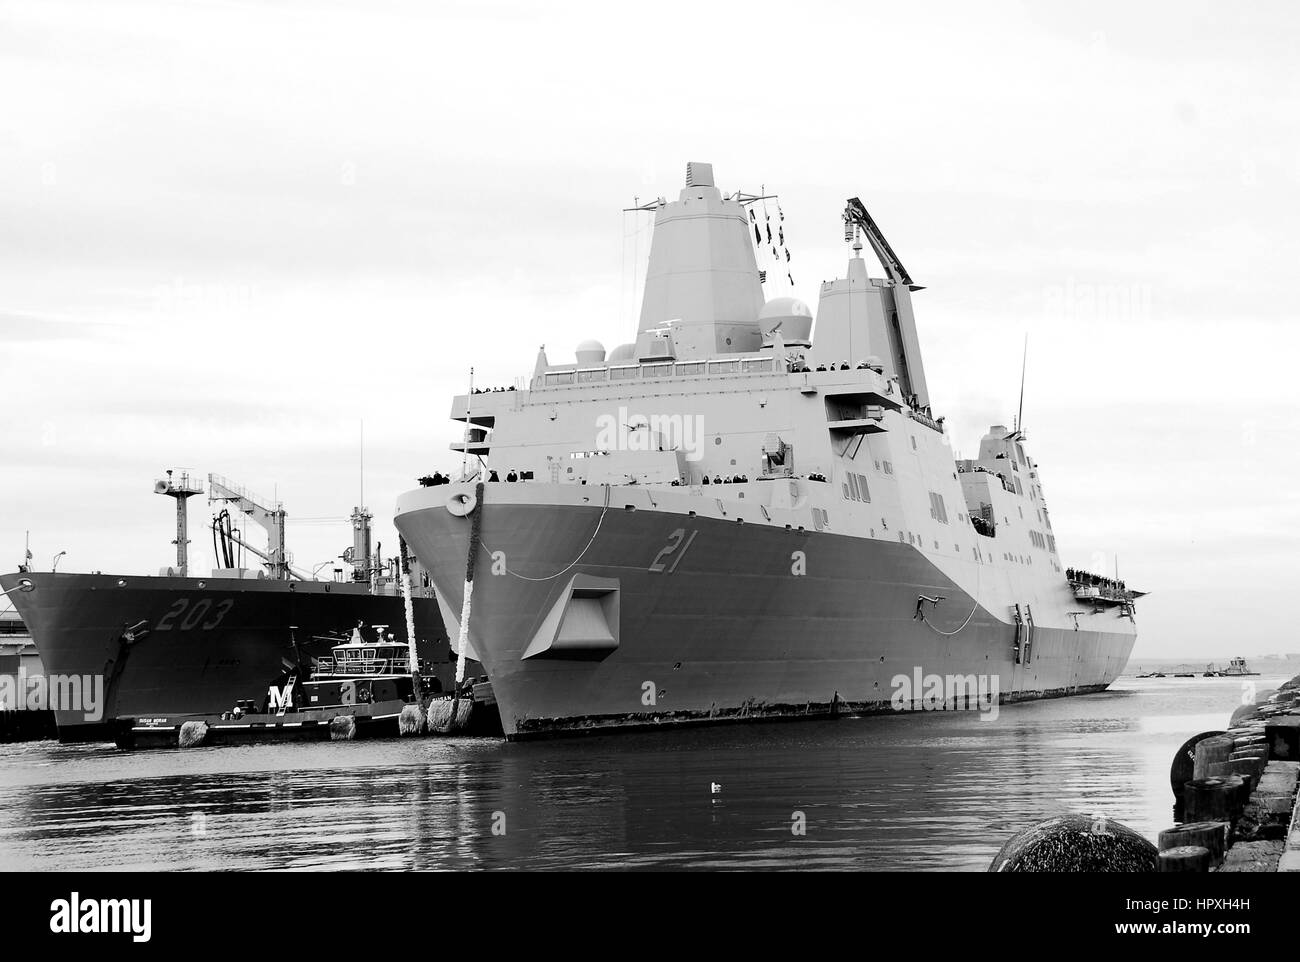 USS New York arriva alla stazione navale di Norfolk dopo una distribuzione per gli Stati Uniti la quinta e la sesta flotta aree di responsabilità, Norfolk, Virginia, Dicembre 20, 2012. Immagine cortesia US Navy specialista di comunicazione 1a classe Lolita Lewis. Foto Stock